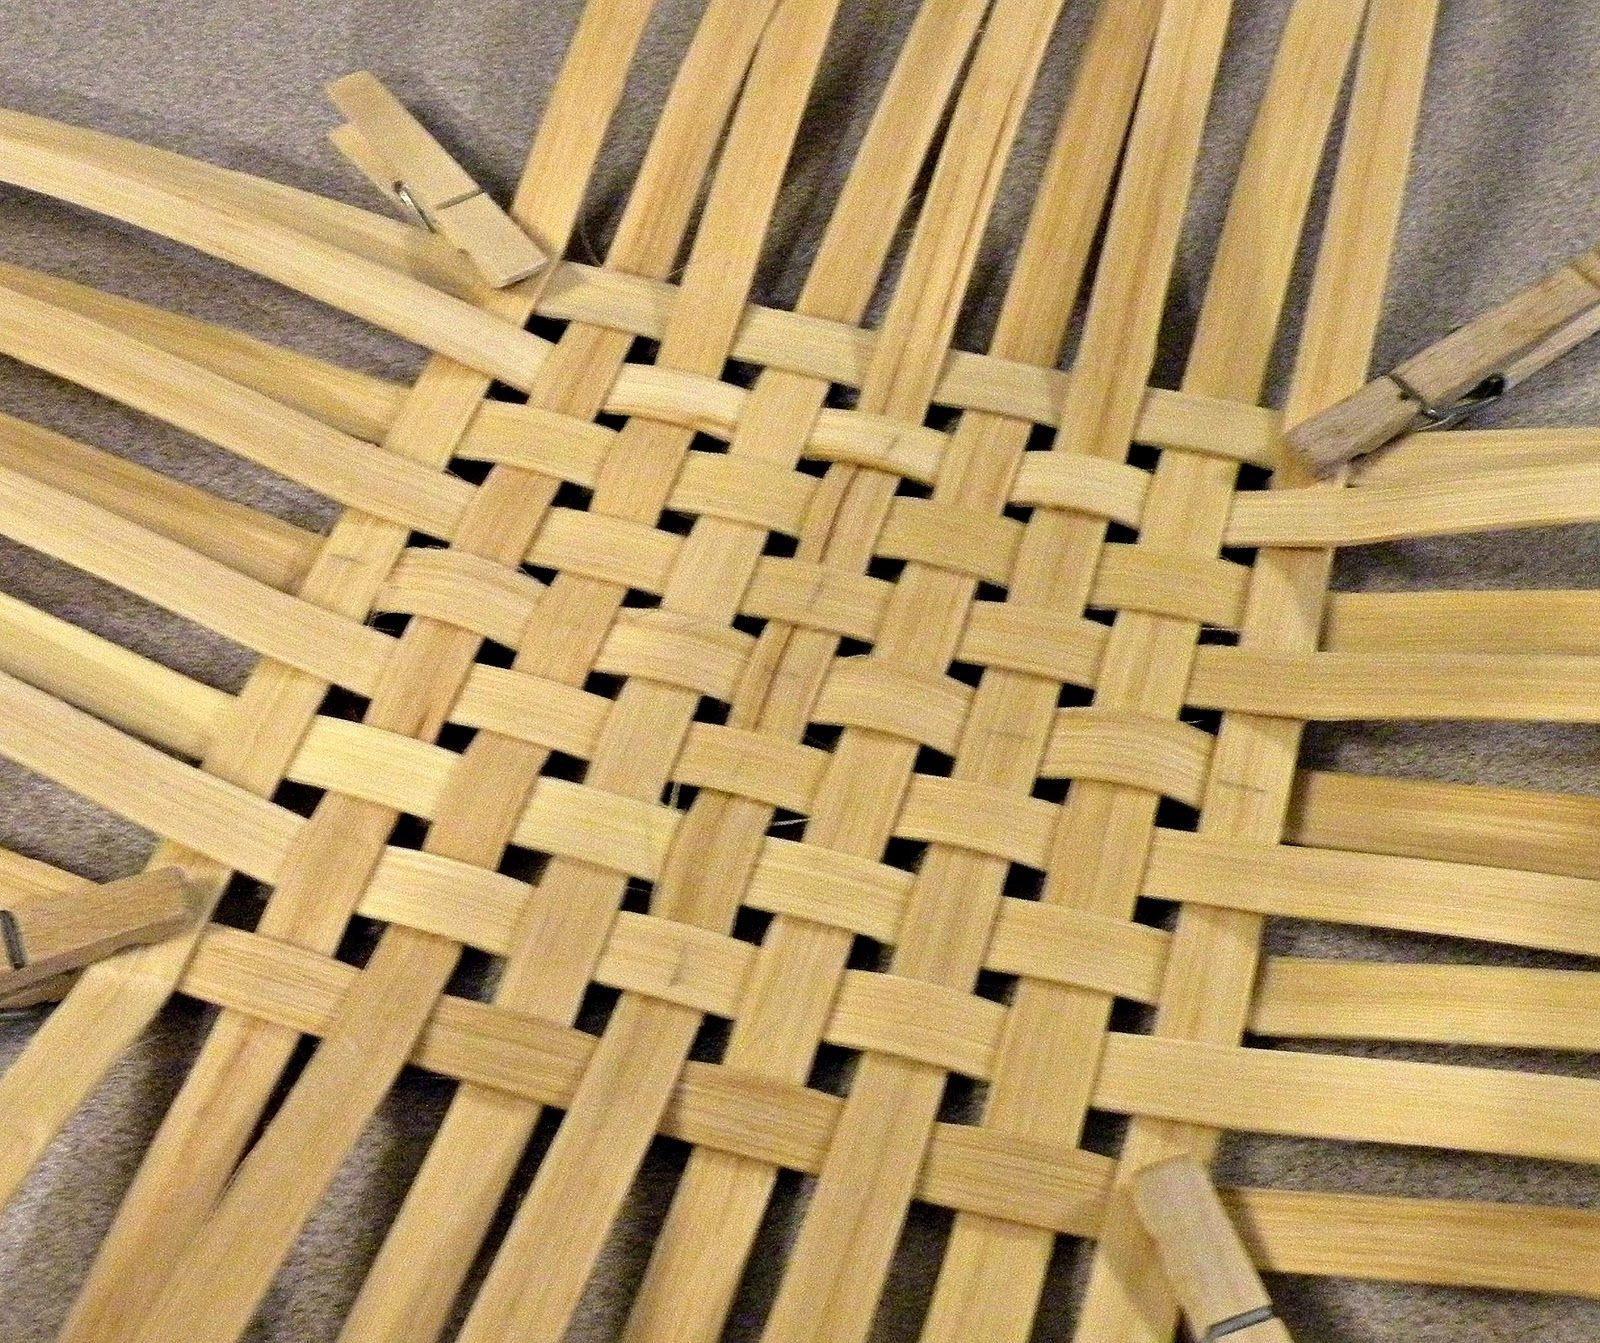 Уроки плетения из ротанга для начинающих обучение. Плетение корзин из ротанга. Ротанг для плетения. Ротанг для плетения корзин. Плетеная корзина из бамбука.